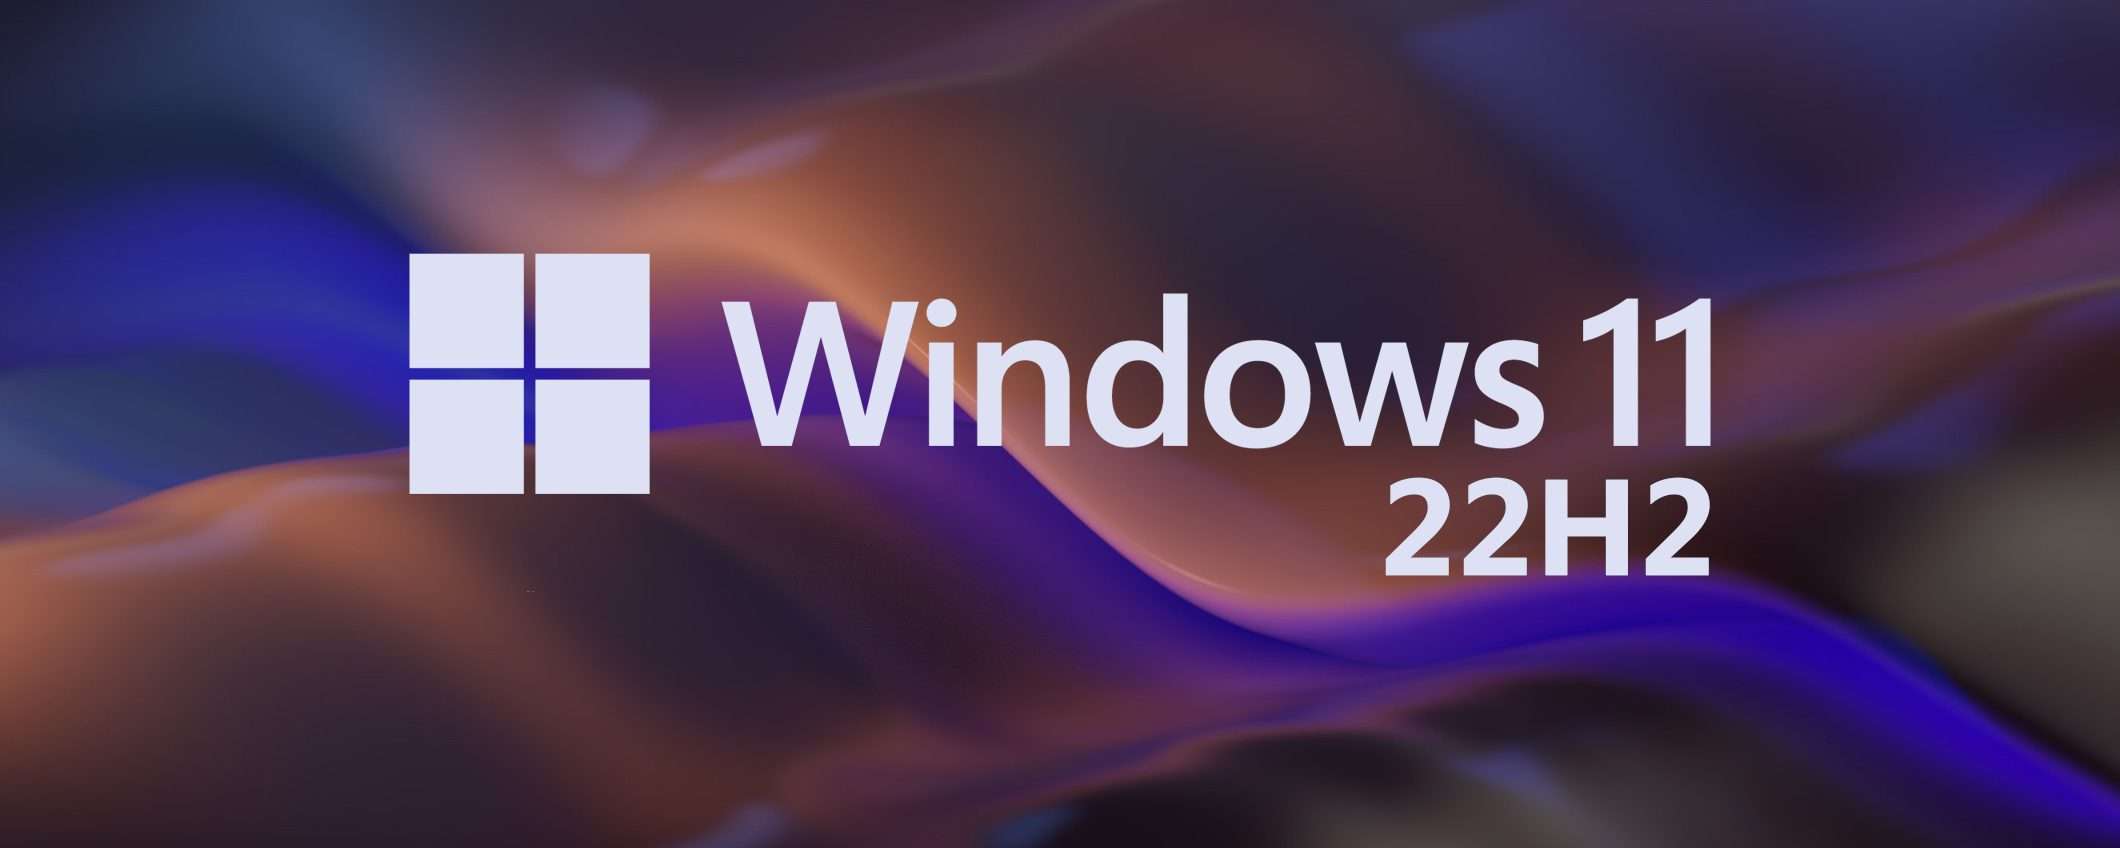 Windows 11 22H2: risolti i problemi con i giochi